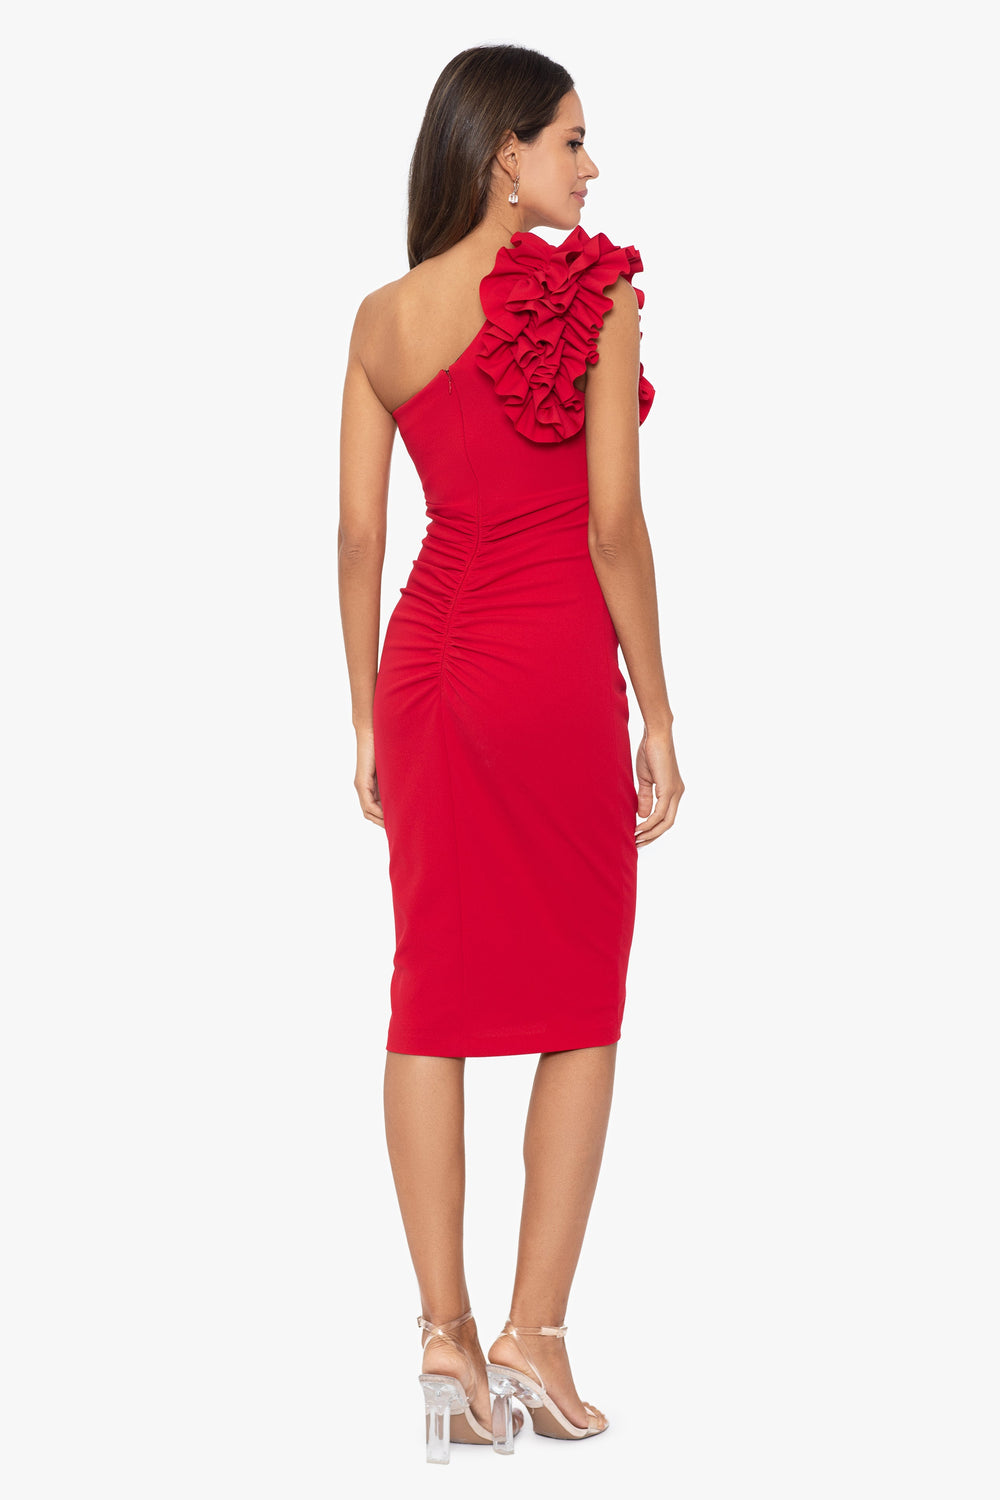 Model wearing red one shoulder knee length shoulder ruffle dress